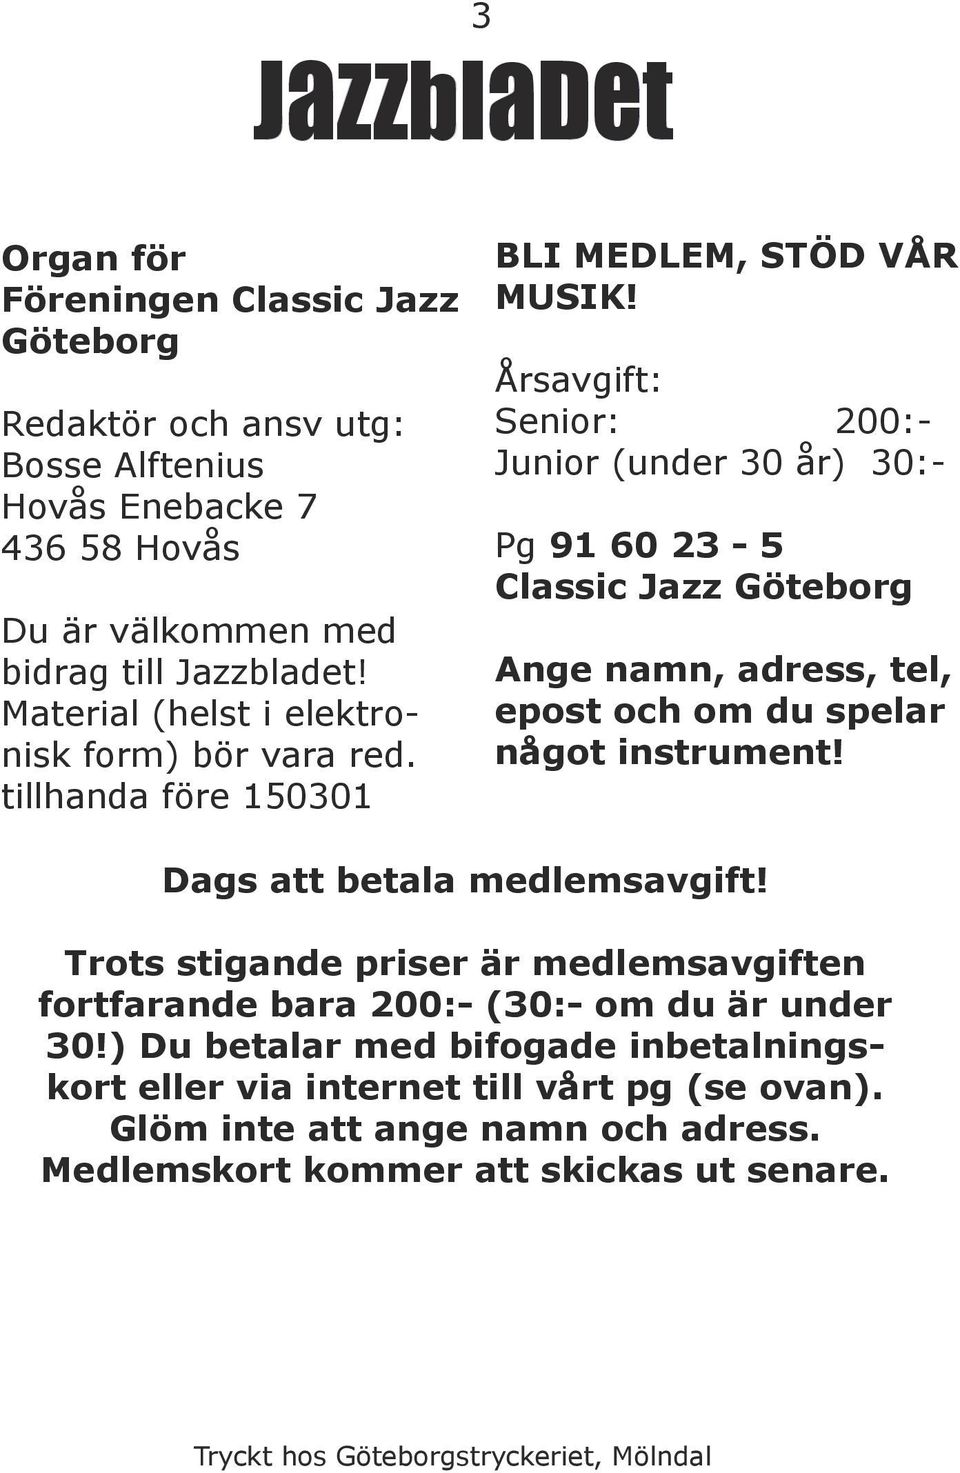 Årsavgift: Senior: 200:- Junior (under 30 år) 30:- Pg 91 60 23-5 Classic Jazz Göteborg Ange namn, adress, tel, epost och om du spelar något instrument! Dags att betala medlemsavgift!